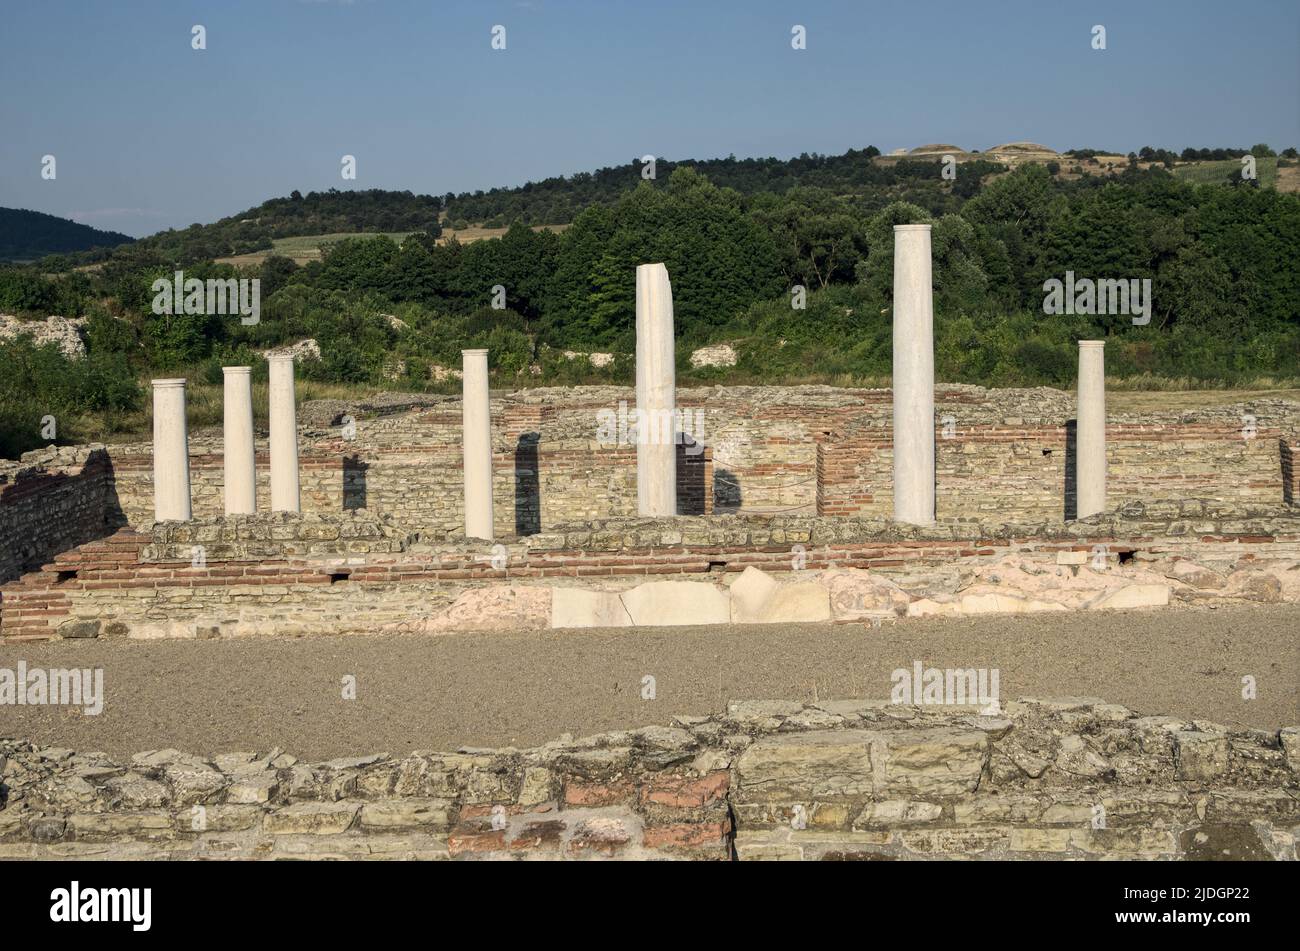 Columnas de peristyle en la excavación arqueológica de Gamzigrad, el antiguo Félix Romuliana construido por Galerio Emperador del Imperio Romano en Serbia Foto de stock